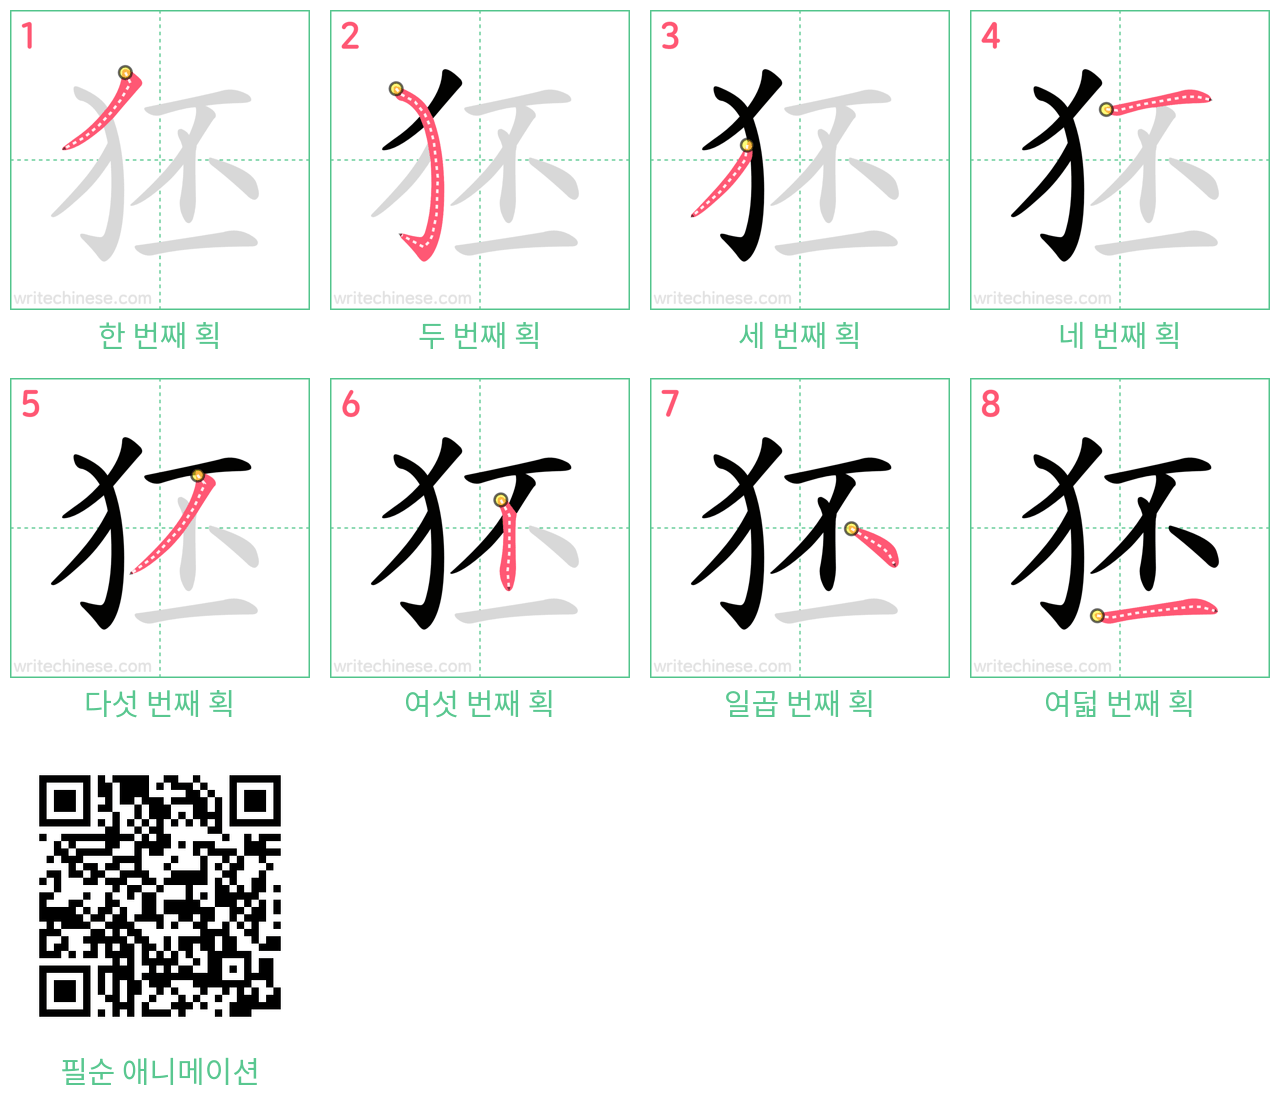 狉 step-by-step stroke order diagrams